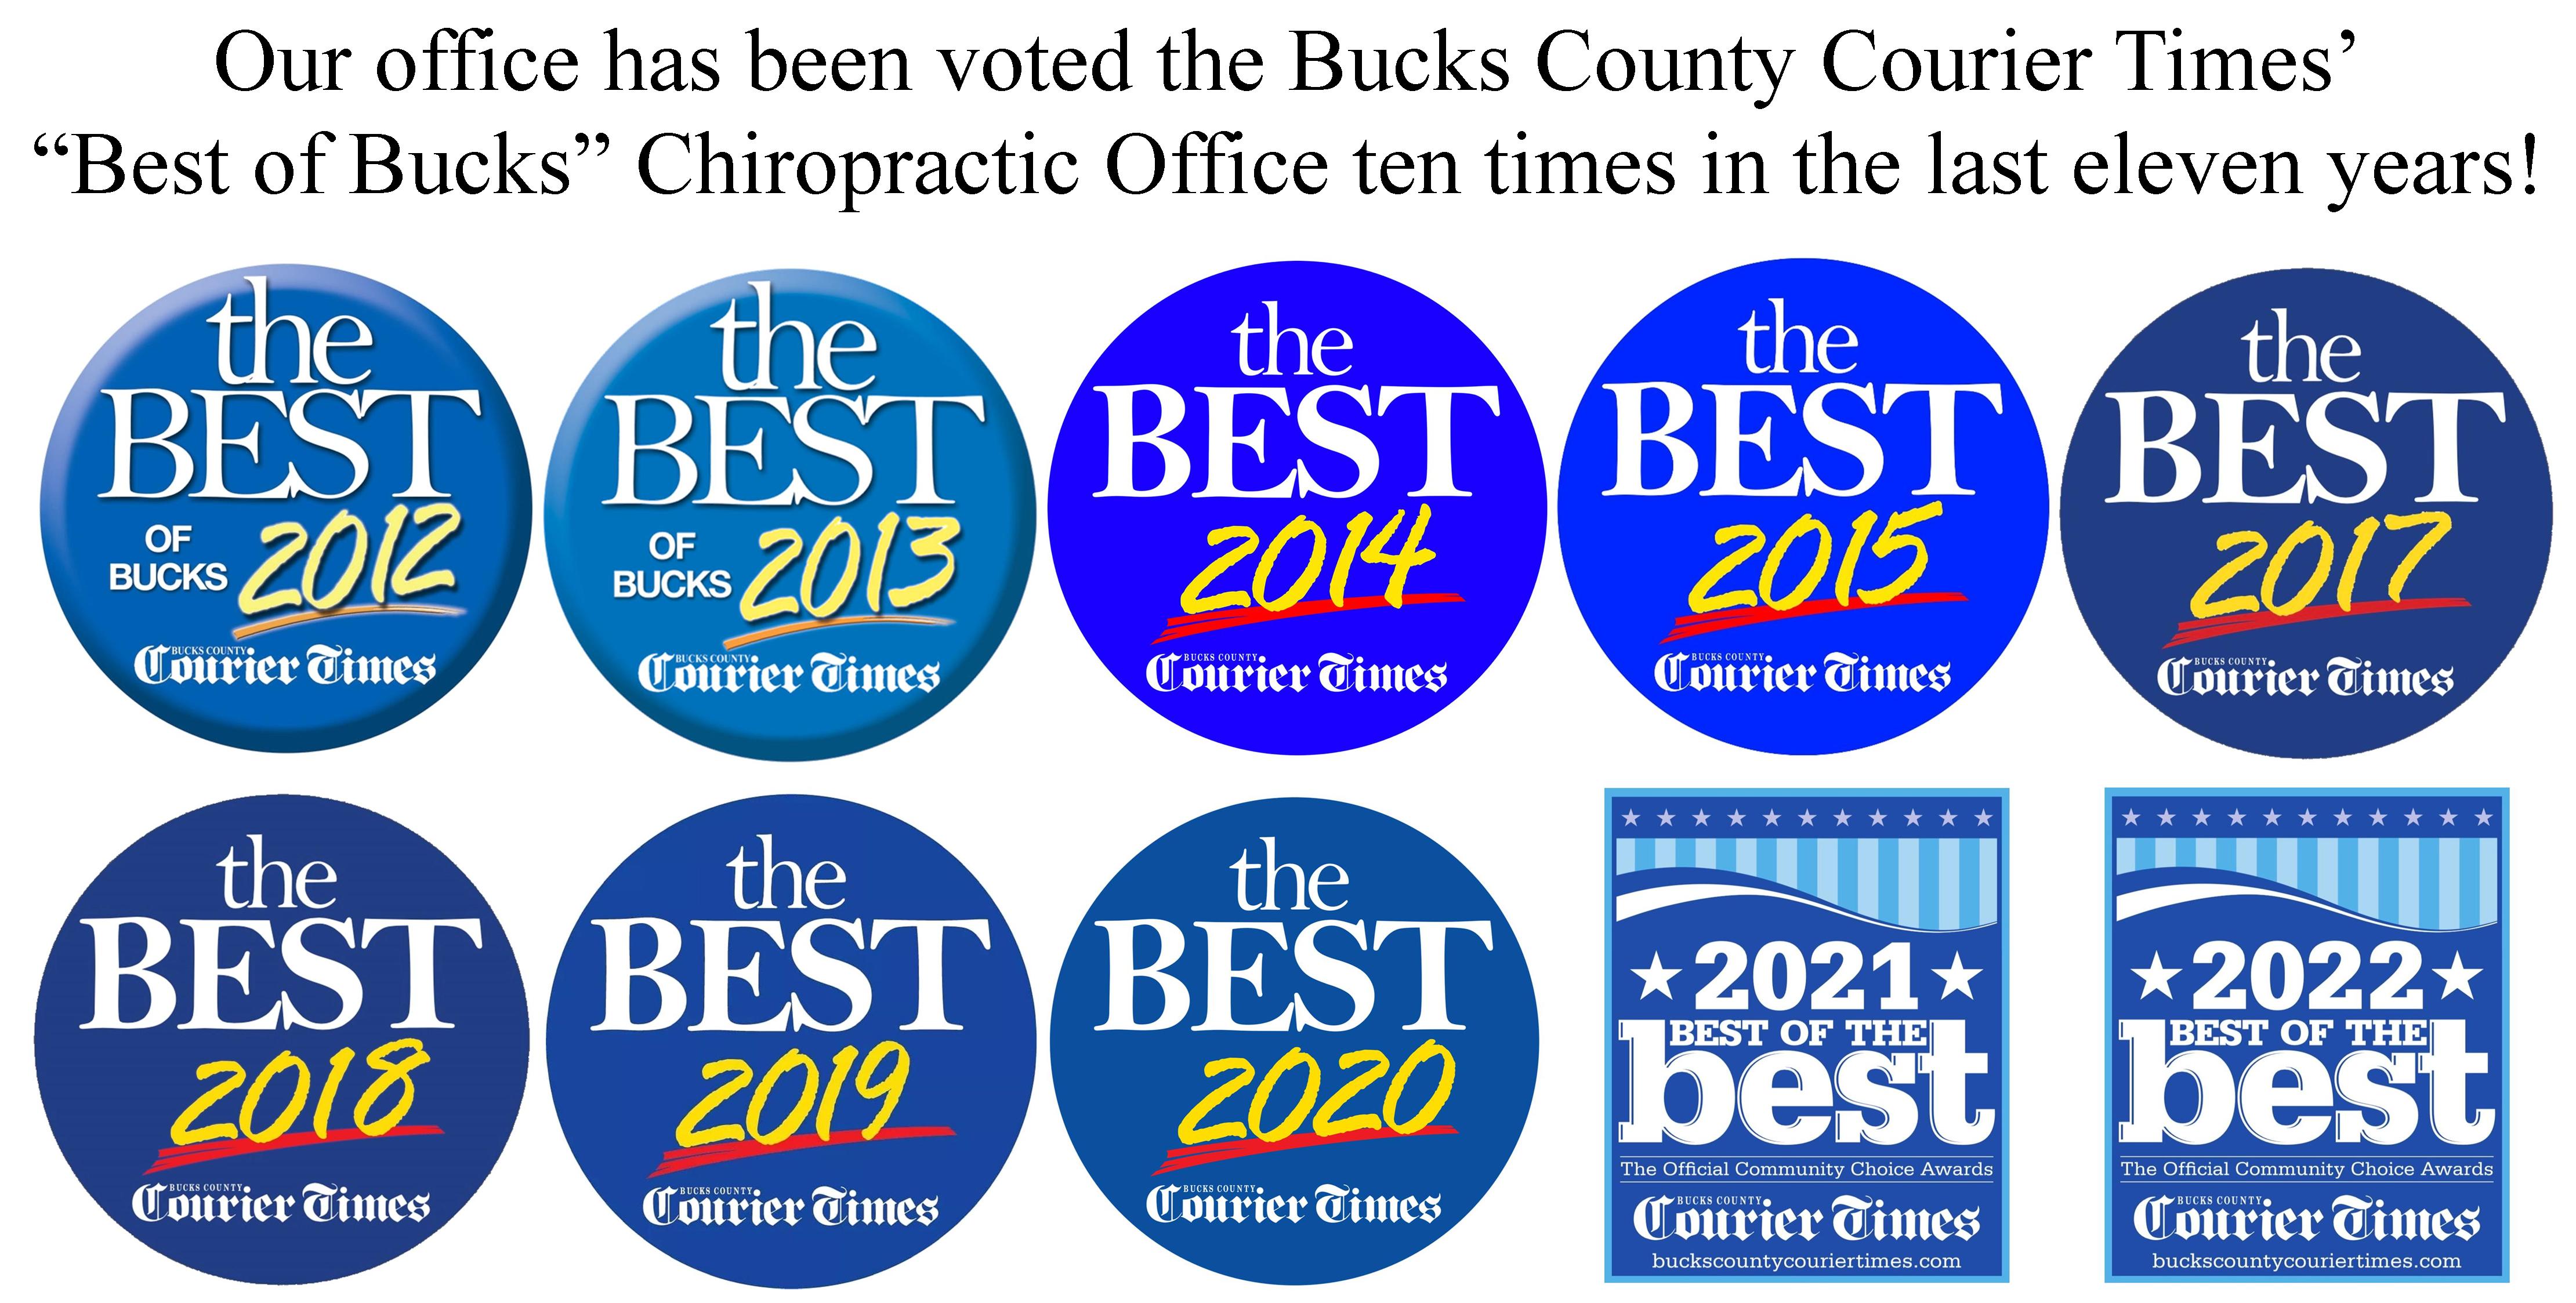 Best of Bucks Chiropractic Office winner 